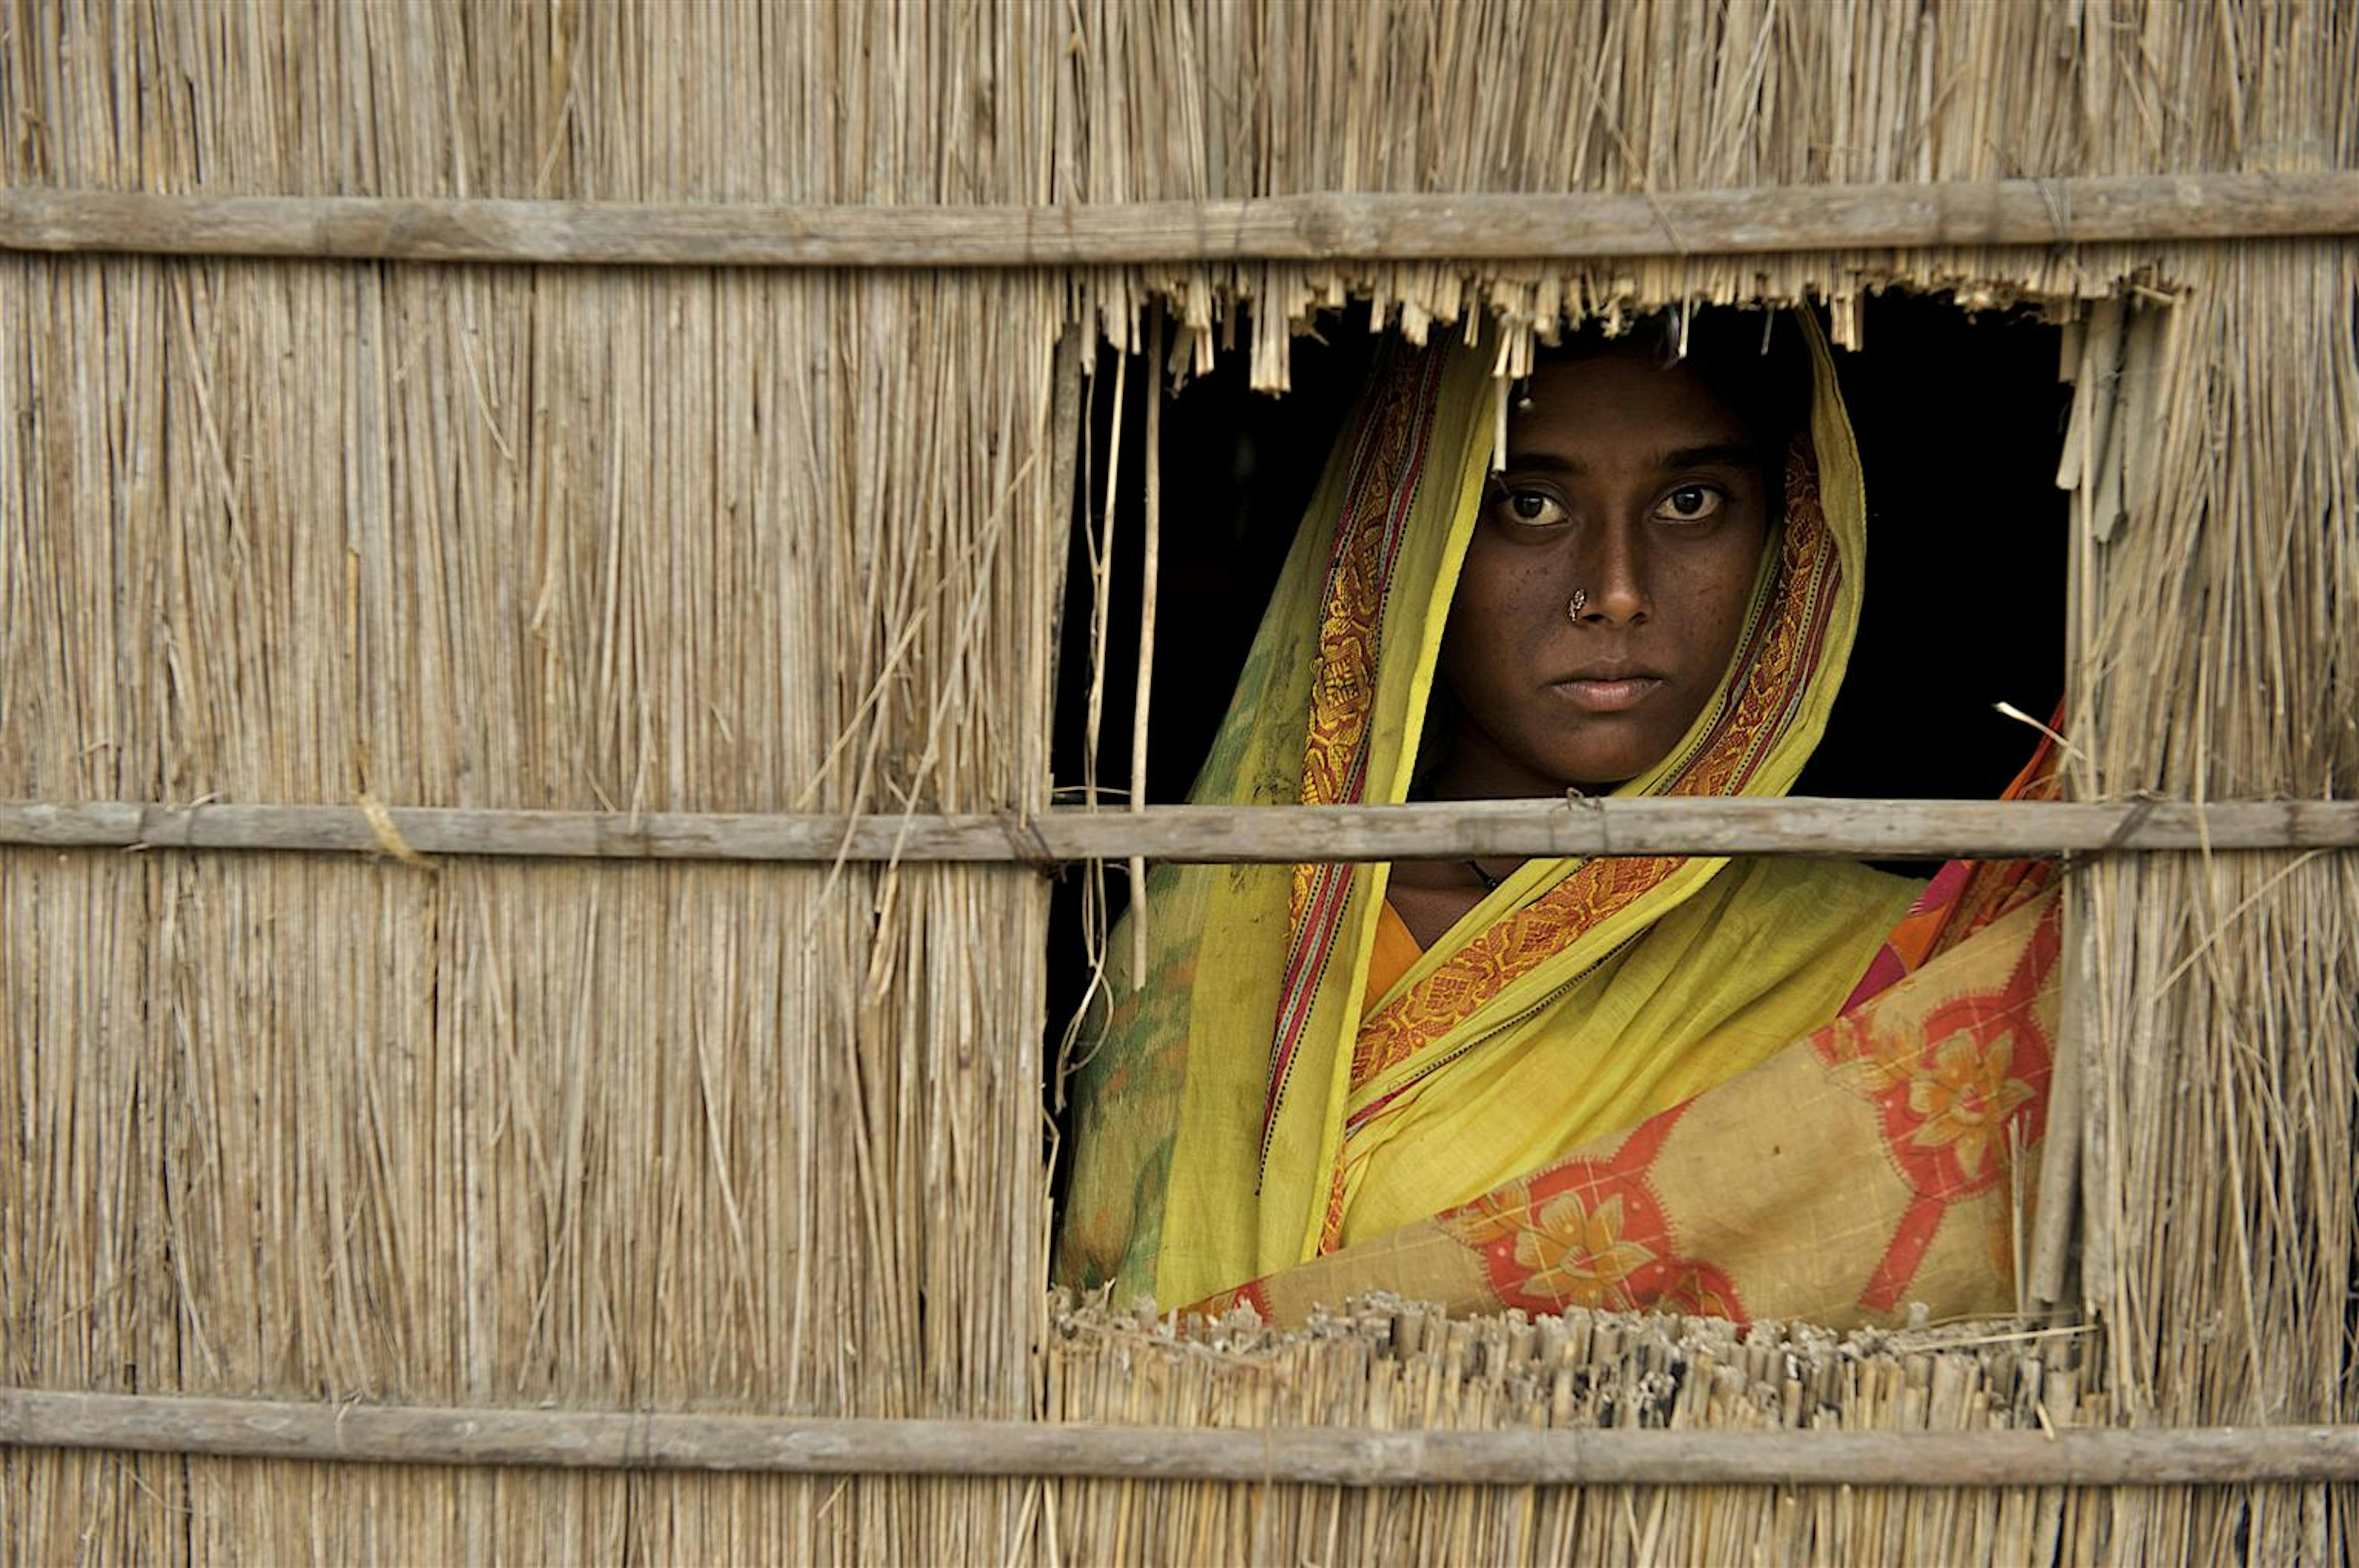 China, 15 anni, nella sua casa di Uttar Bollar Hat (Bangladesh). Sposa a 12 anni, è incinta del primo figlio. In questa regione, i genitori tendono a far sposare le figlie in età più precoce per risparmiare sulla dote -  ©UNICEF/NYHQ2009-2593/Noorani